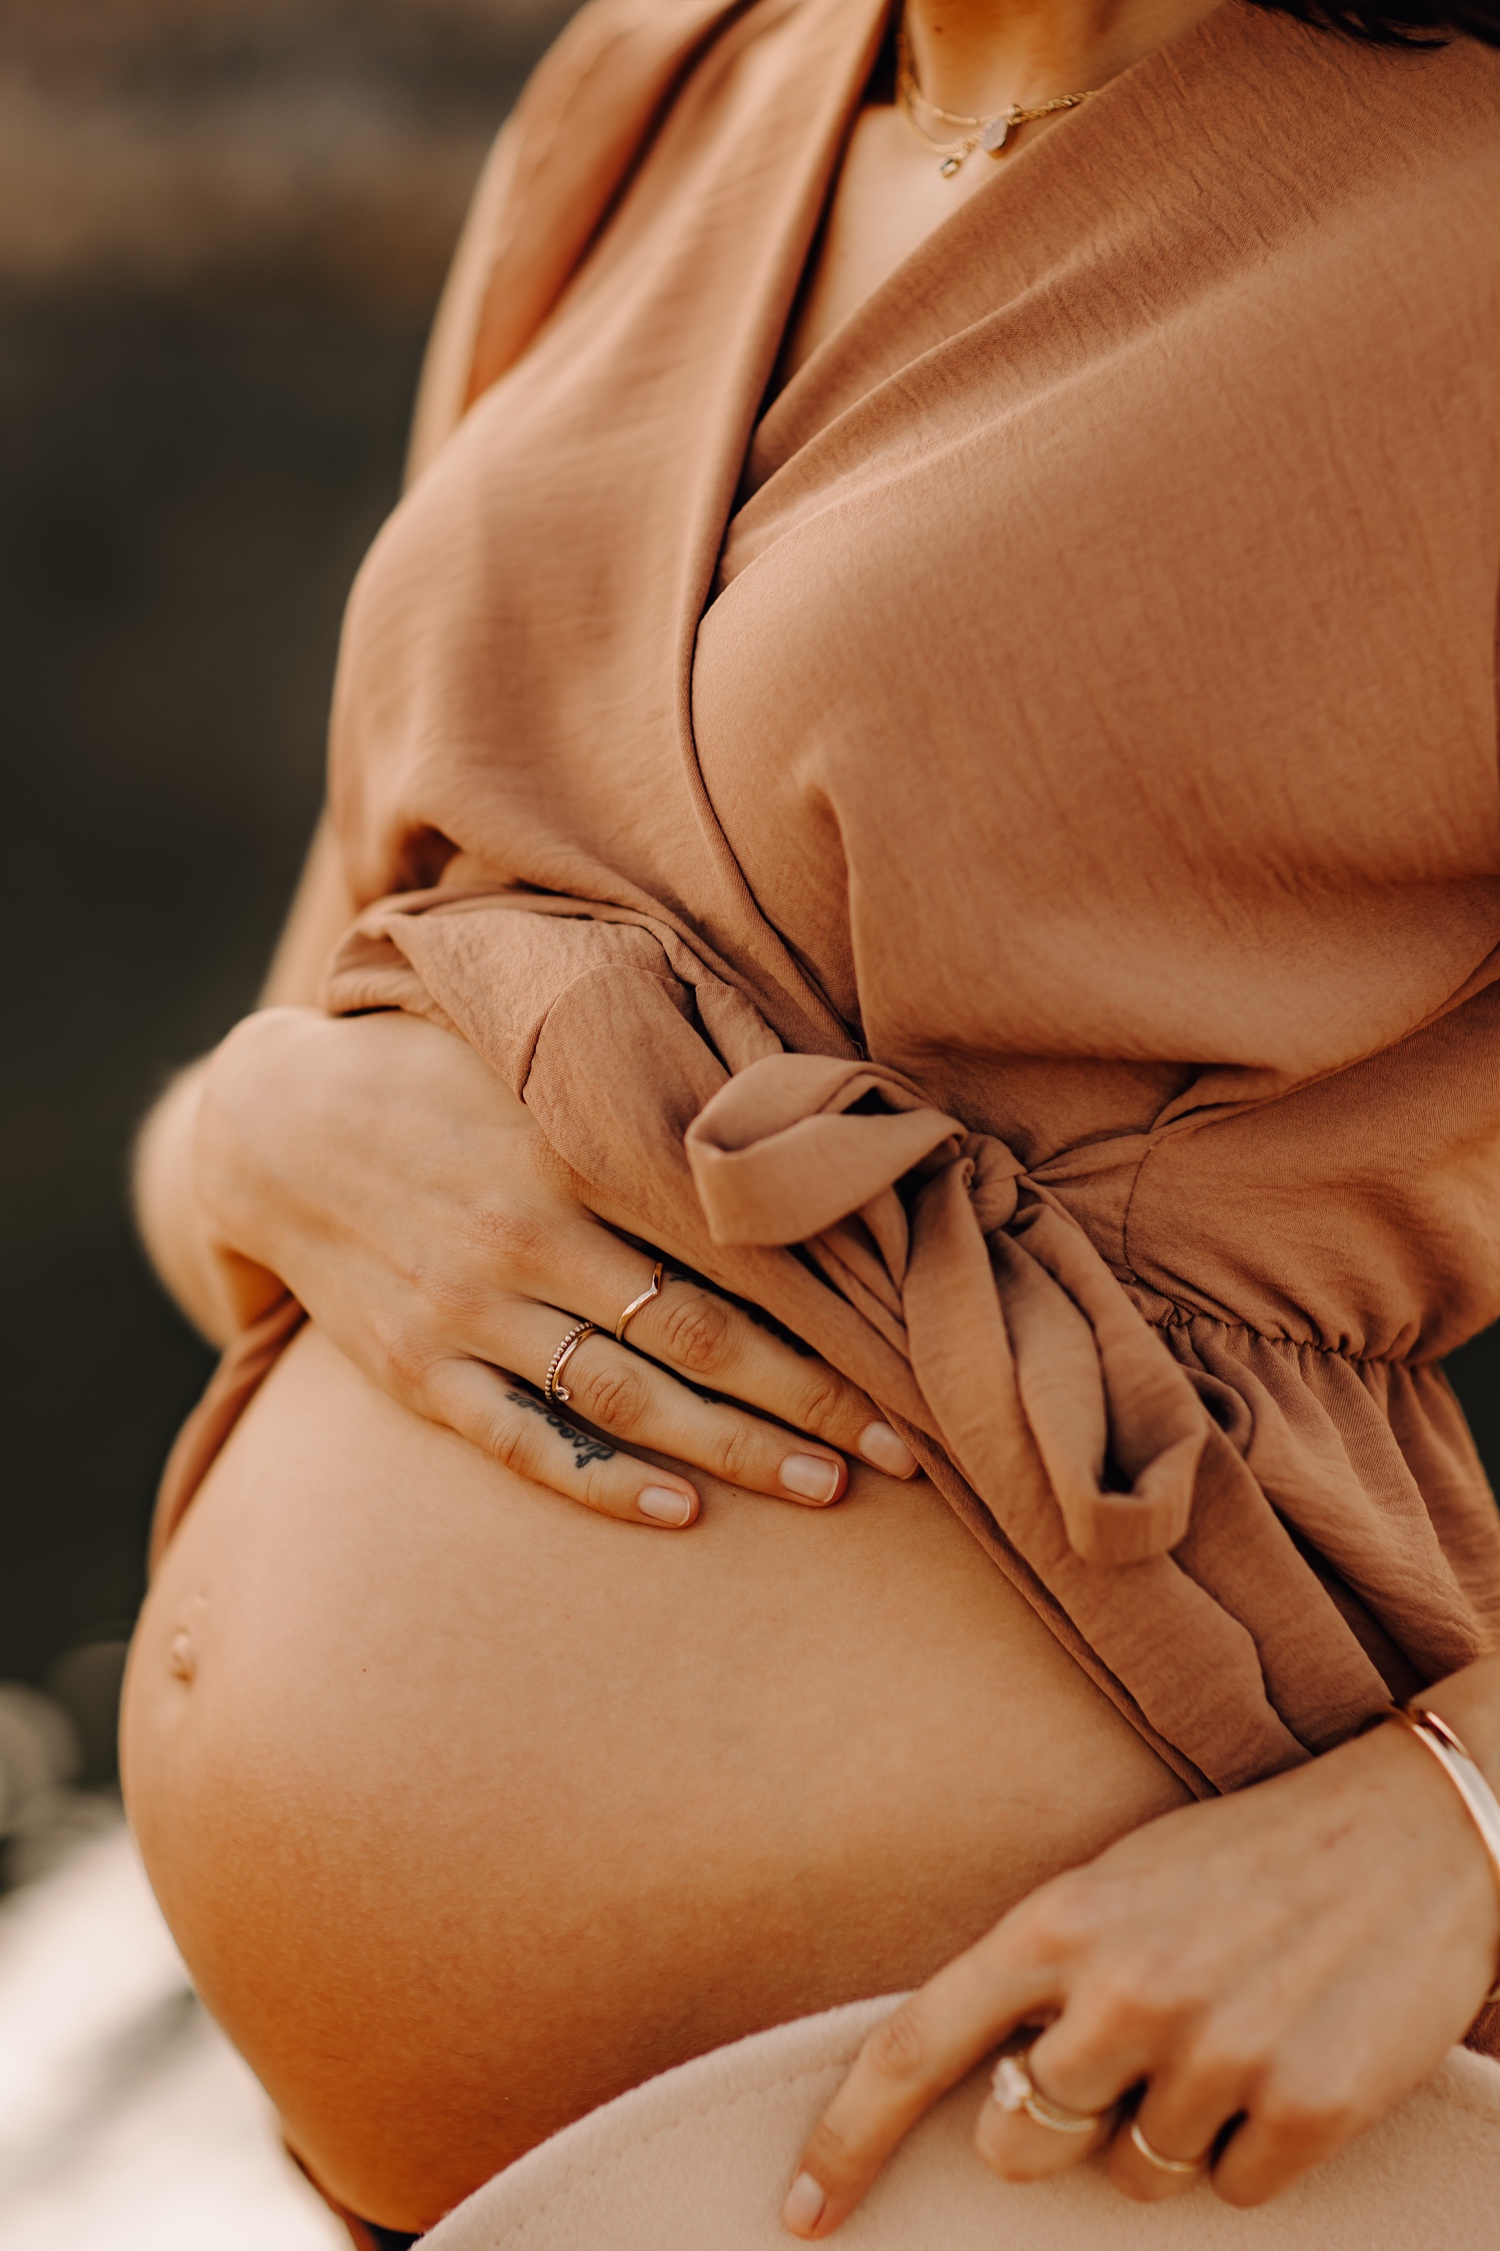 zwangerschapsfotograaf limburg - close-up van de zwangere buik